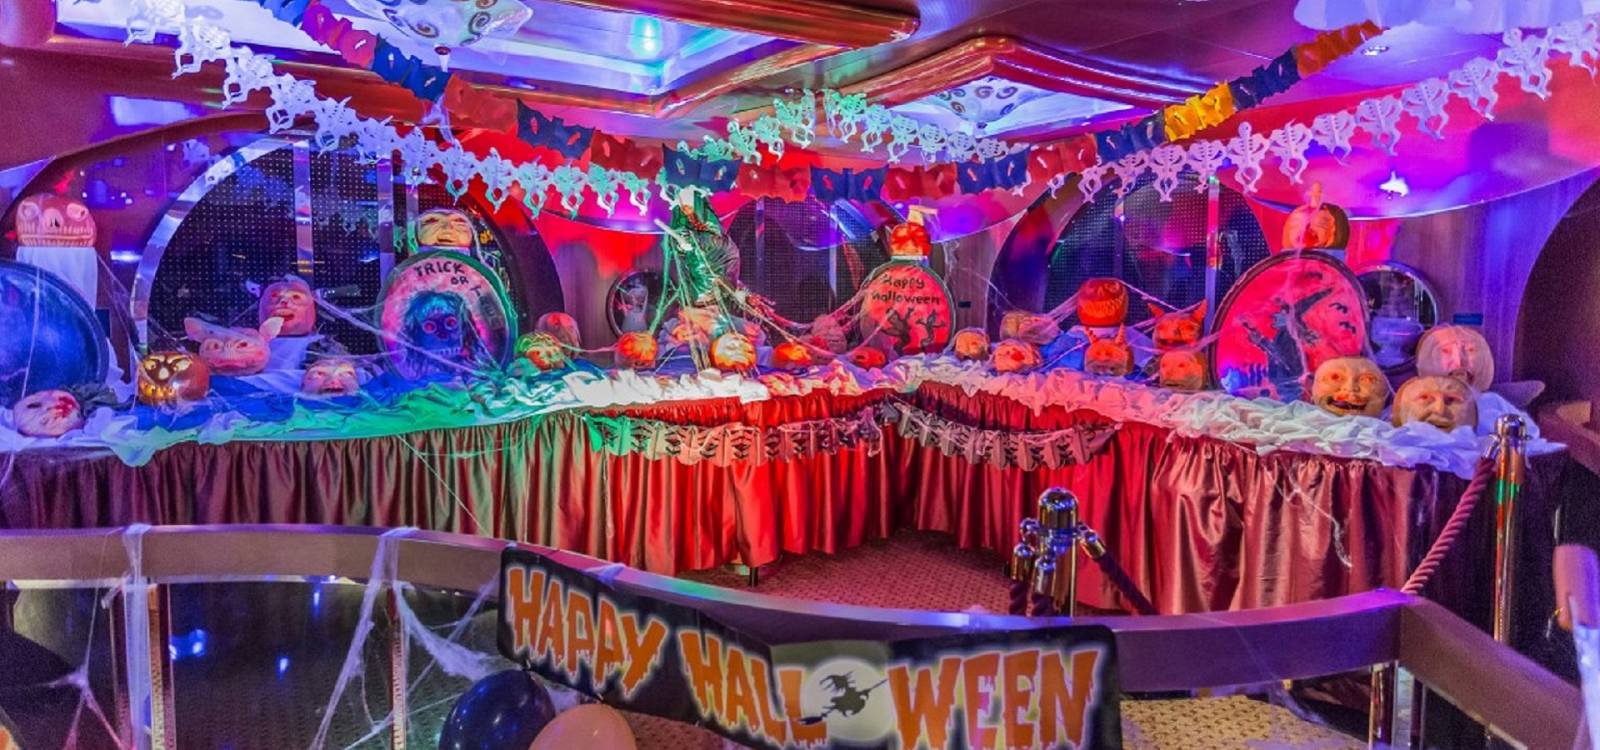 „Süßes oder Saures“: 22 Kilo Bonbons für jedes Schiff  Costa Kreuzfahrten feiert Halloween